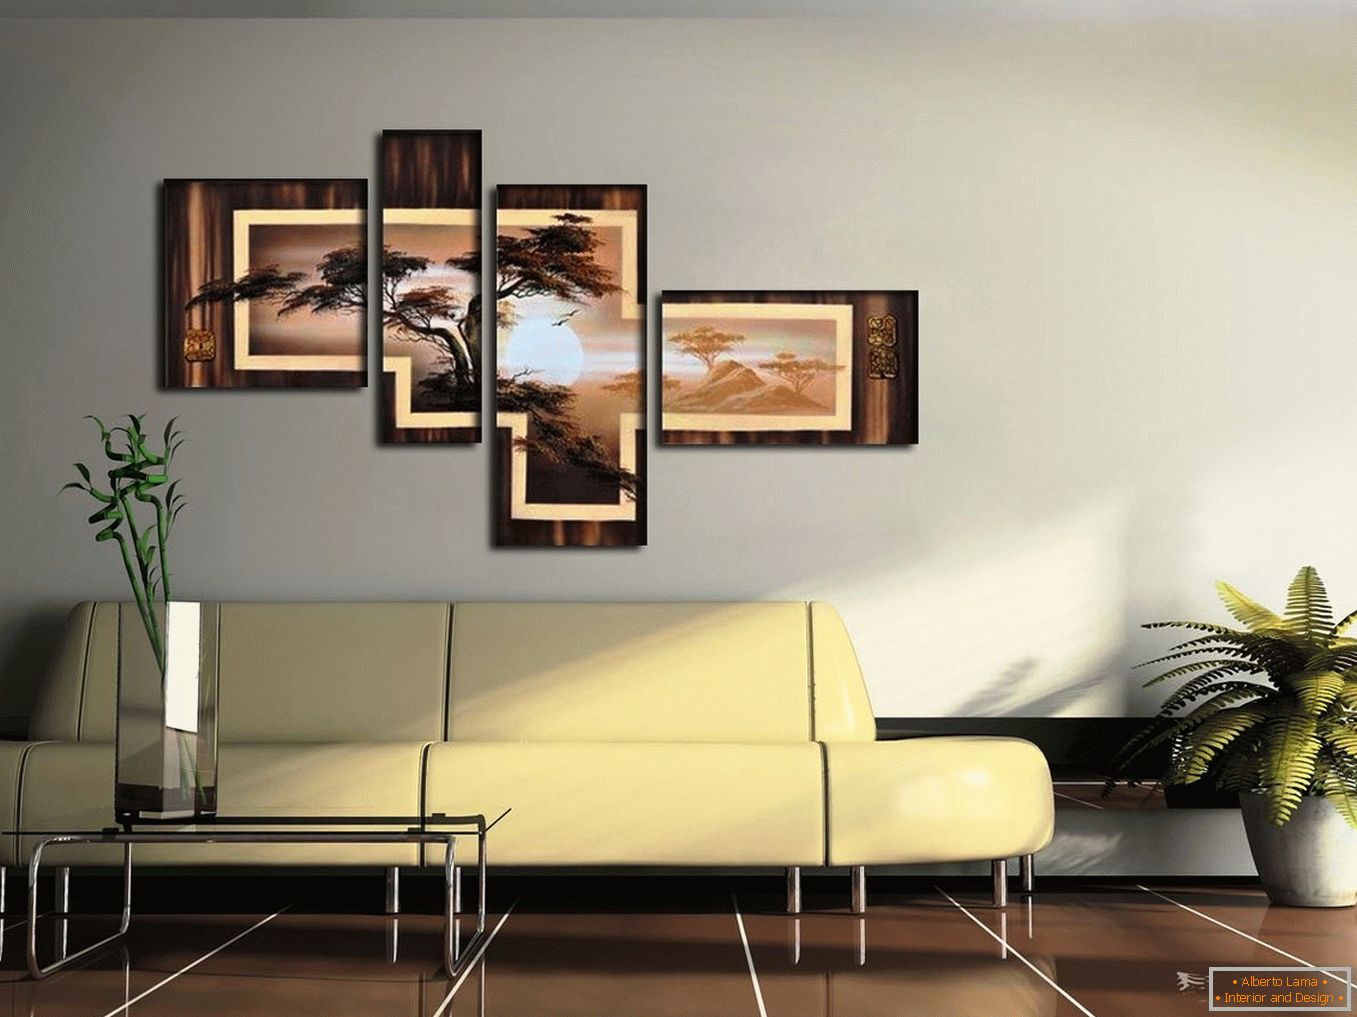 Kontrasztos kép a falon a nappaliban